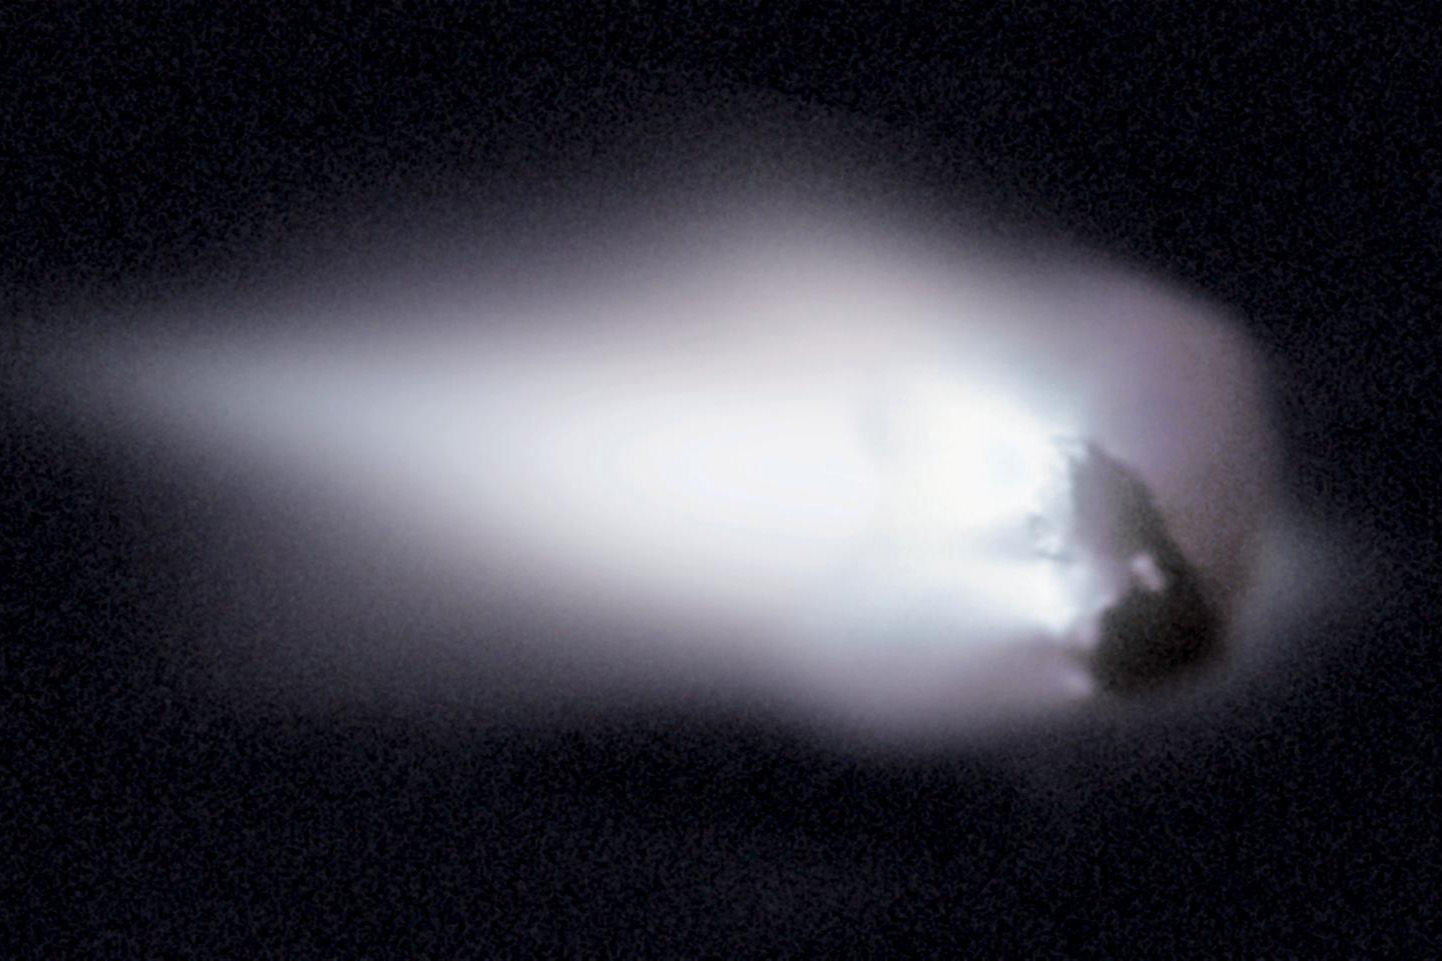 Halleyova kometa